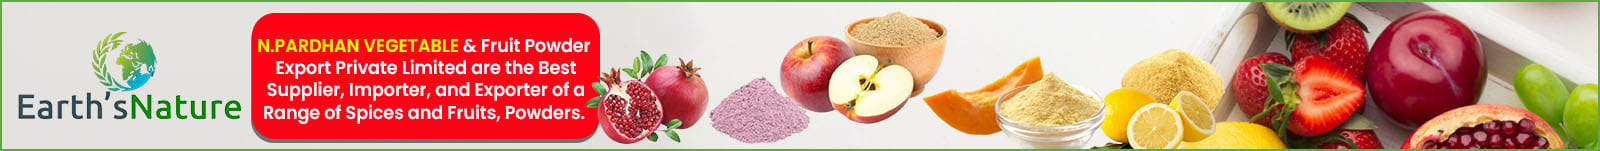 N.Pardhan Vegetable & Fruit Powder Export